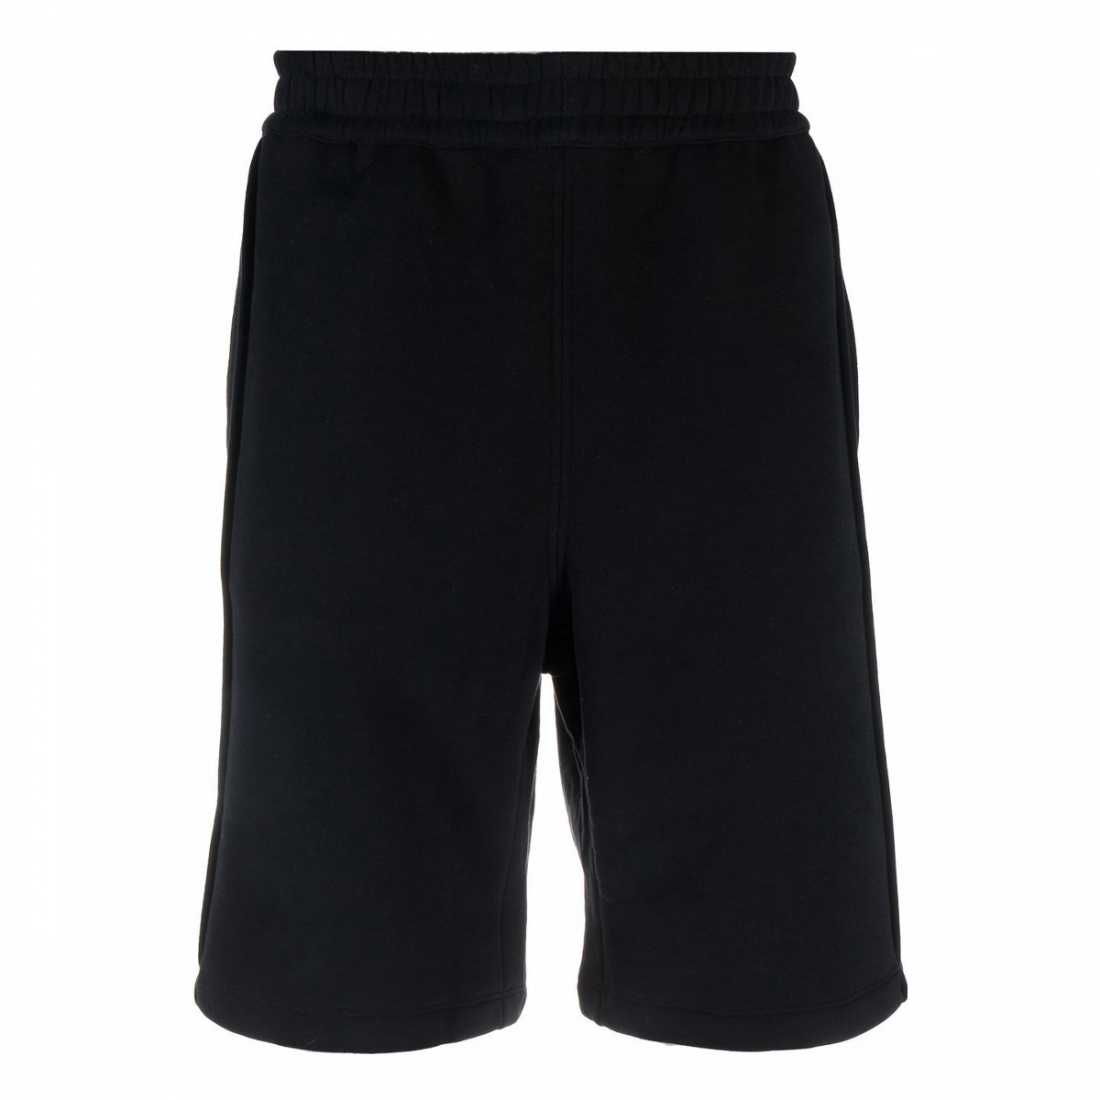 Bermuda Shorts für Herren